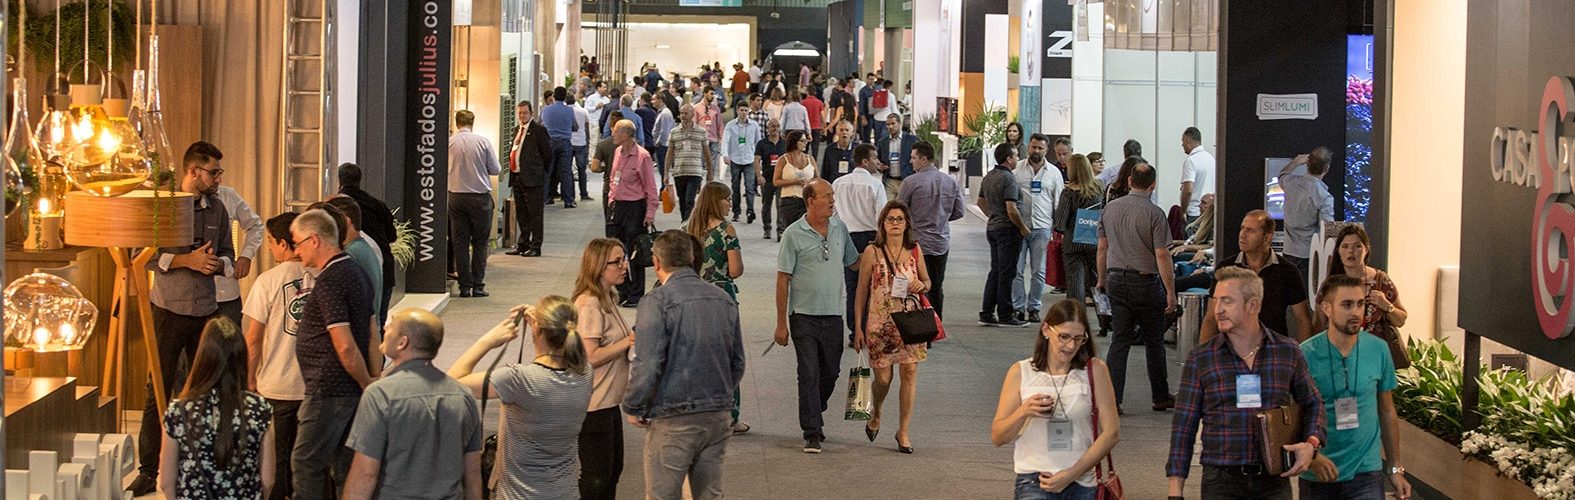 Movelsul Brasil tem 33% de novas empresas expositoras para 2020